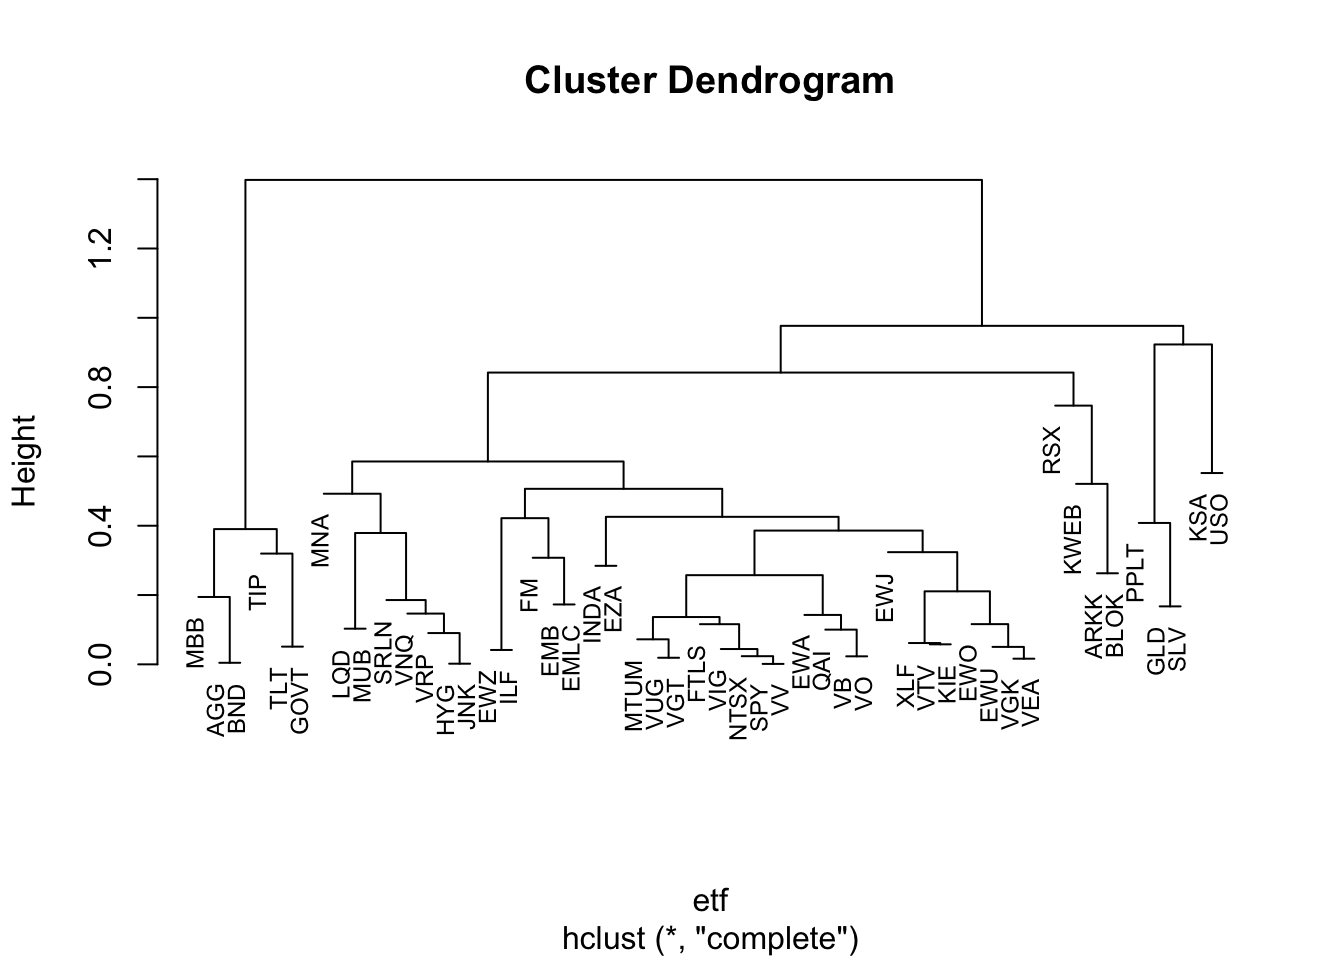 Cluster dendrogram